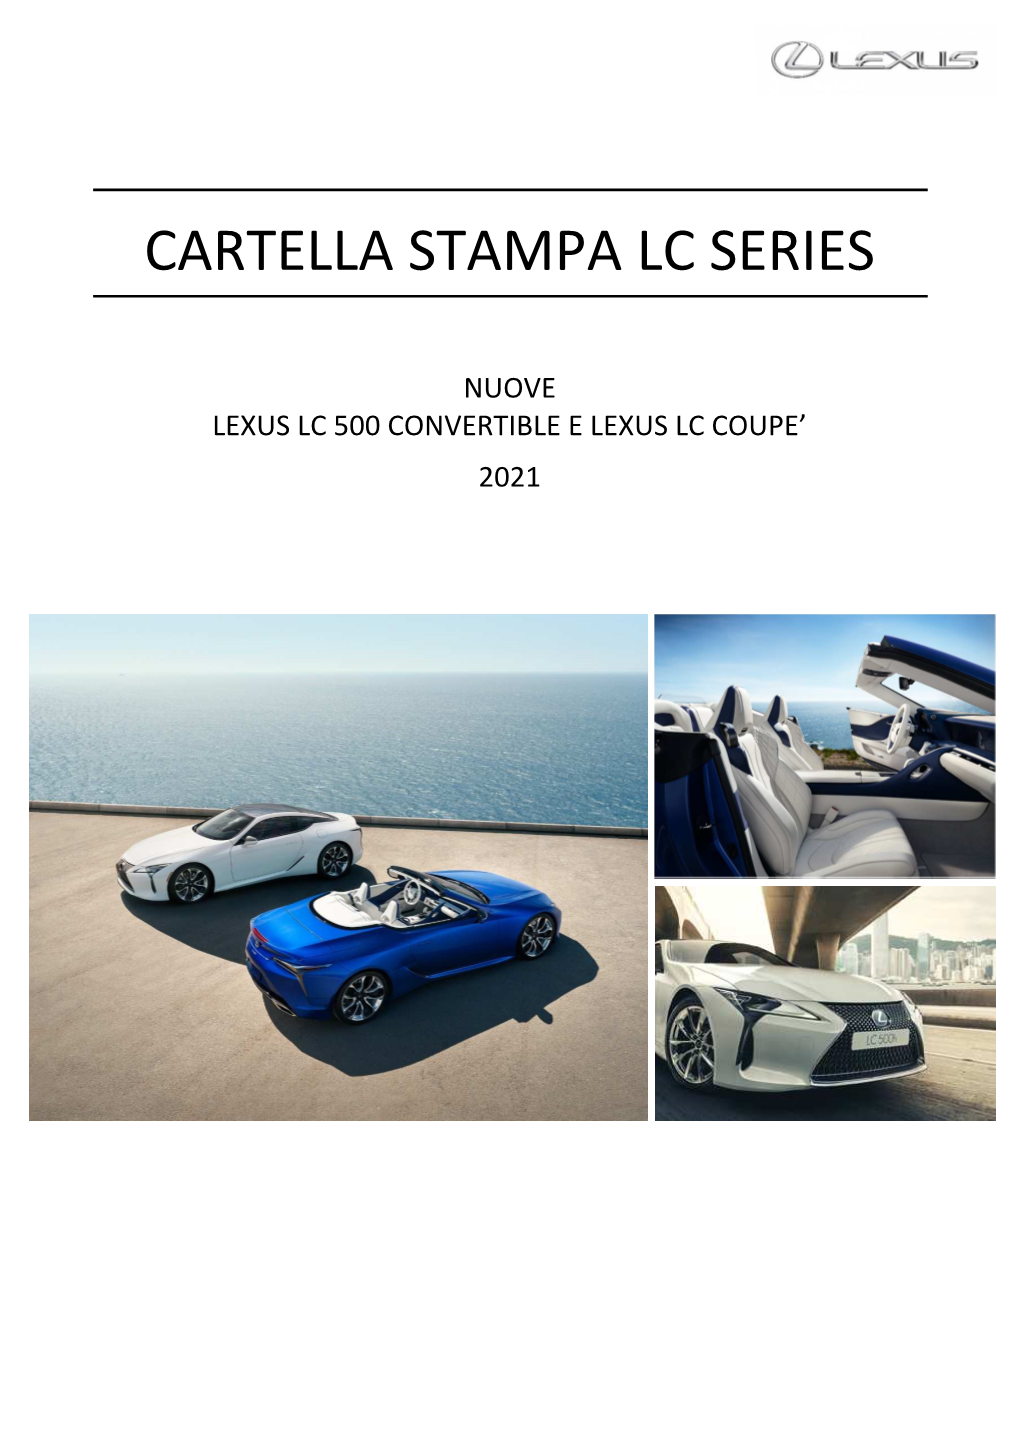 Cartella Stampa Nuove LC Convertible E LC Coupé